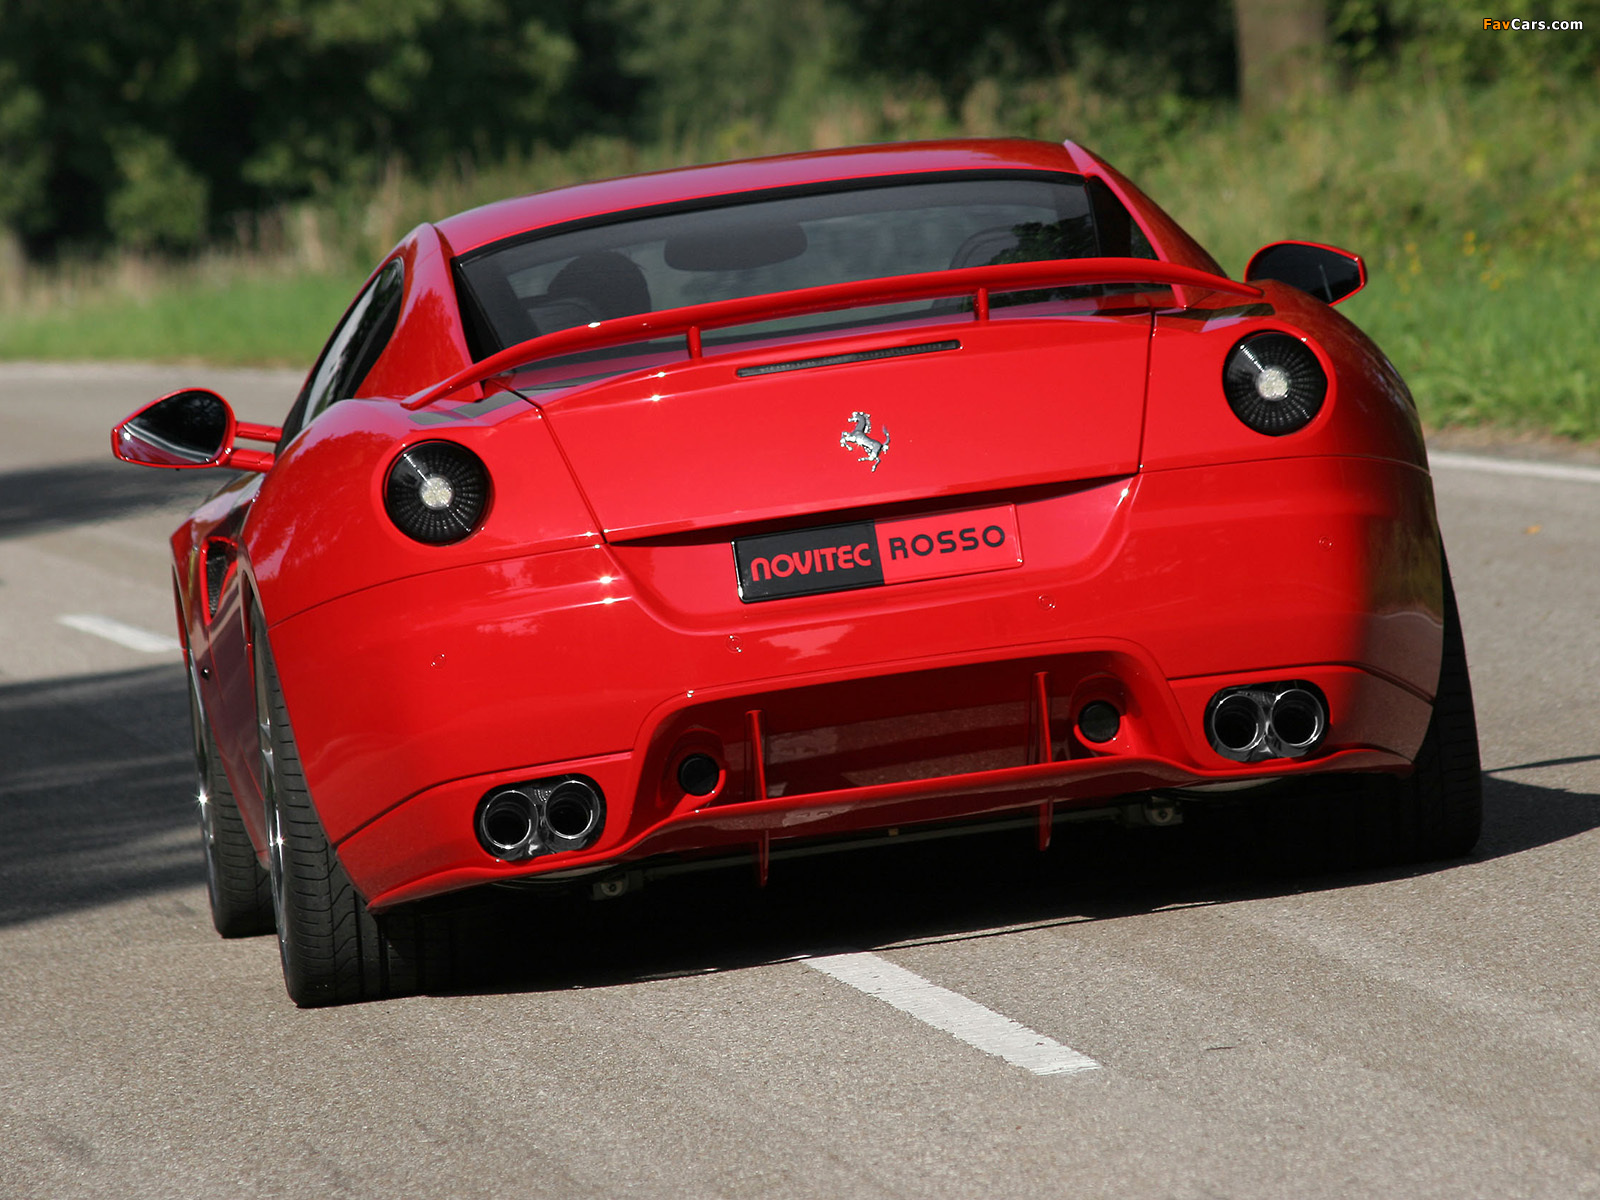 Novitec Rosso Ferrari 599 GTB Fiorano 2006 pictures (1600 x 1200)